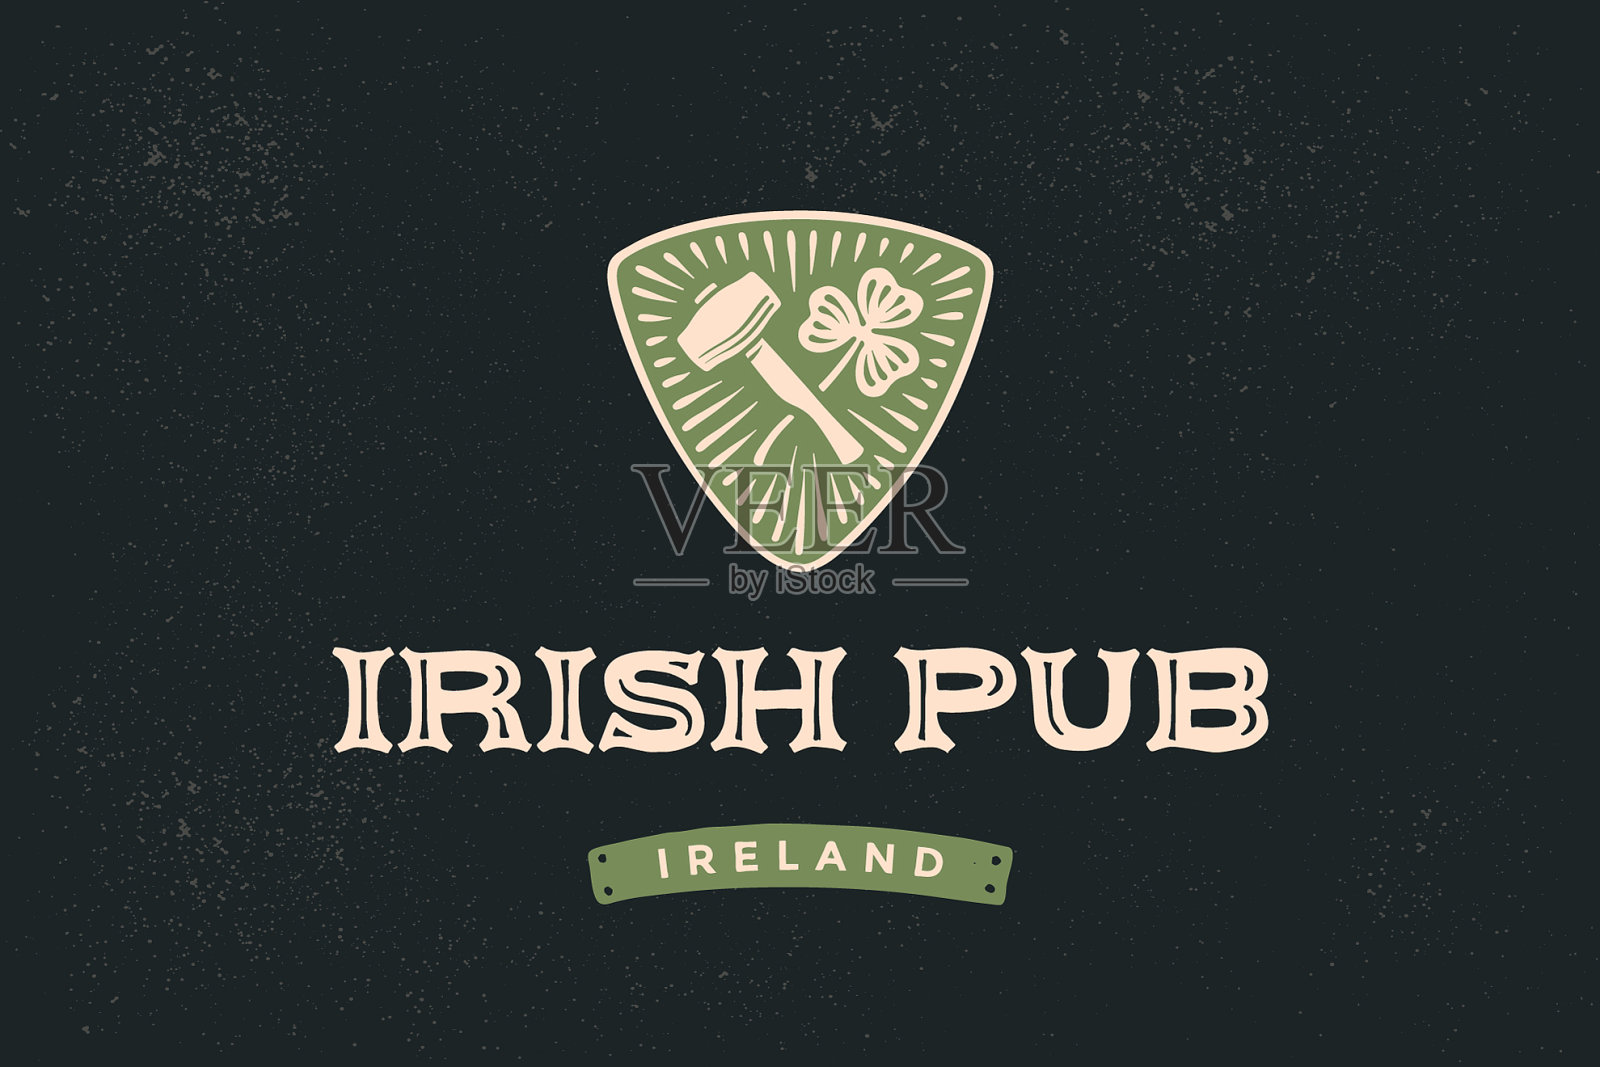 经典复古风格的标签为爱尔兰酒吧设计元素图片